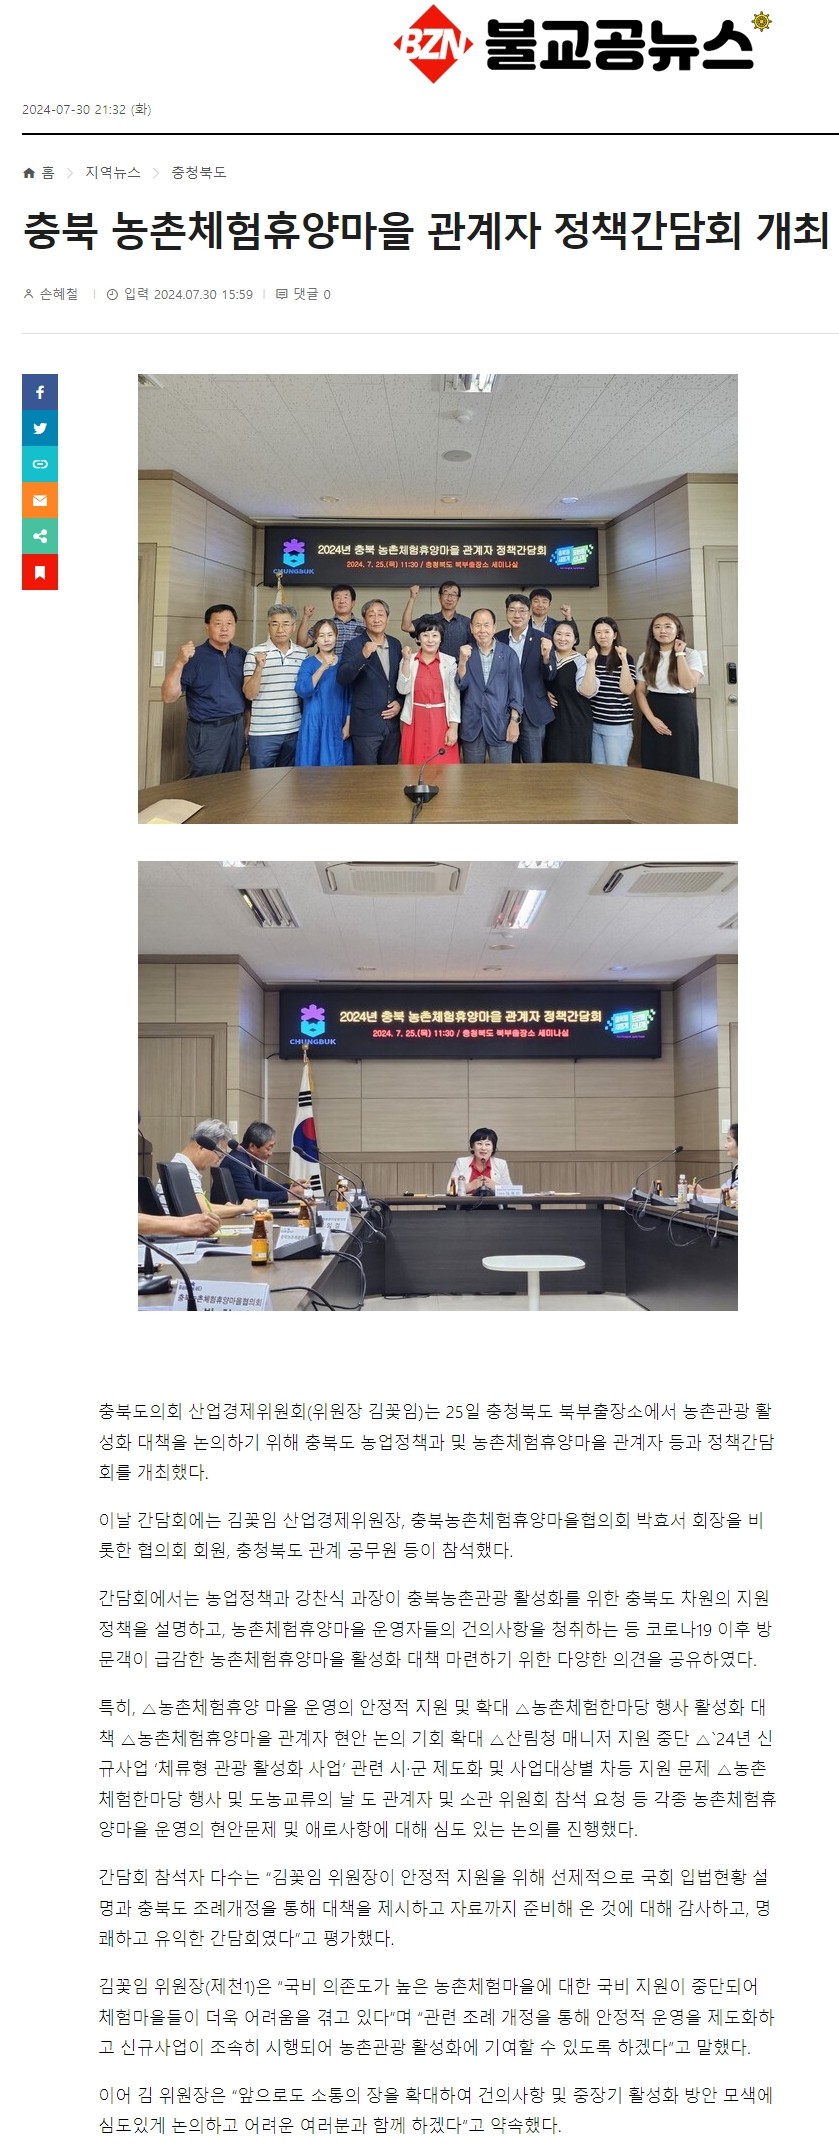 산업경제위원회, 농촌체험휴양마을 정책간담회 개최 - 2